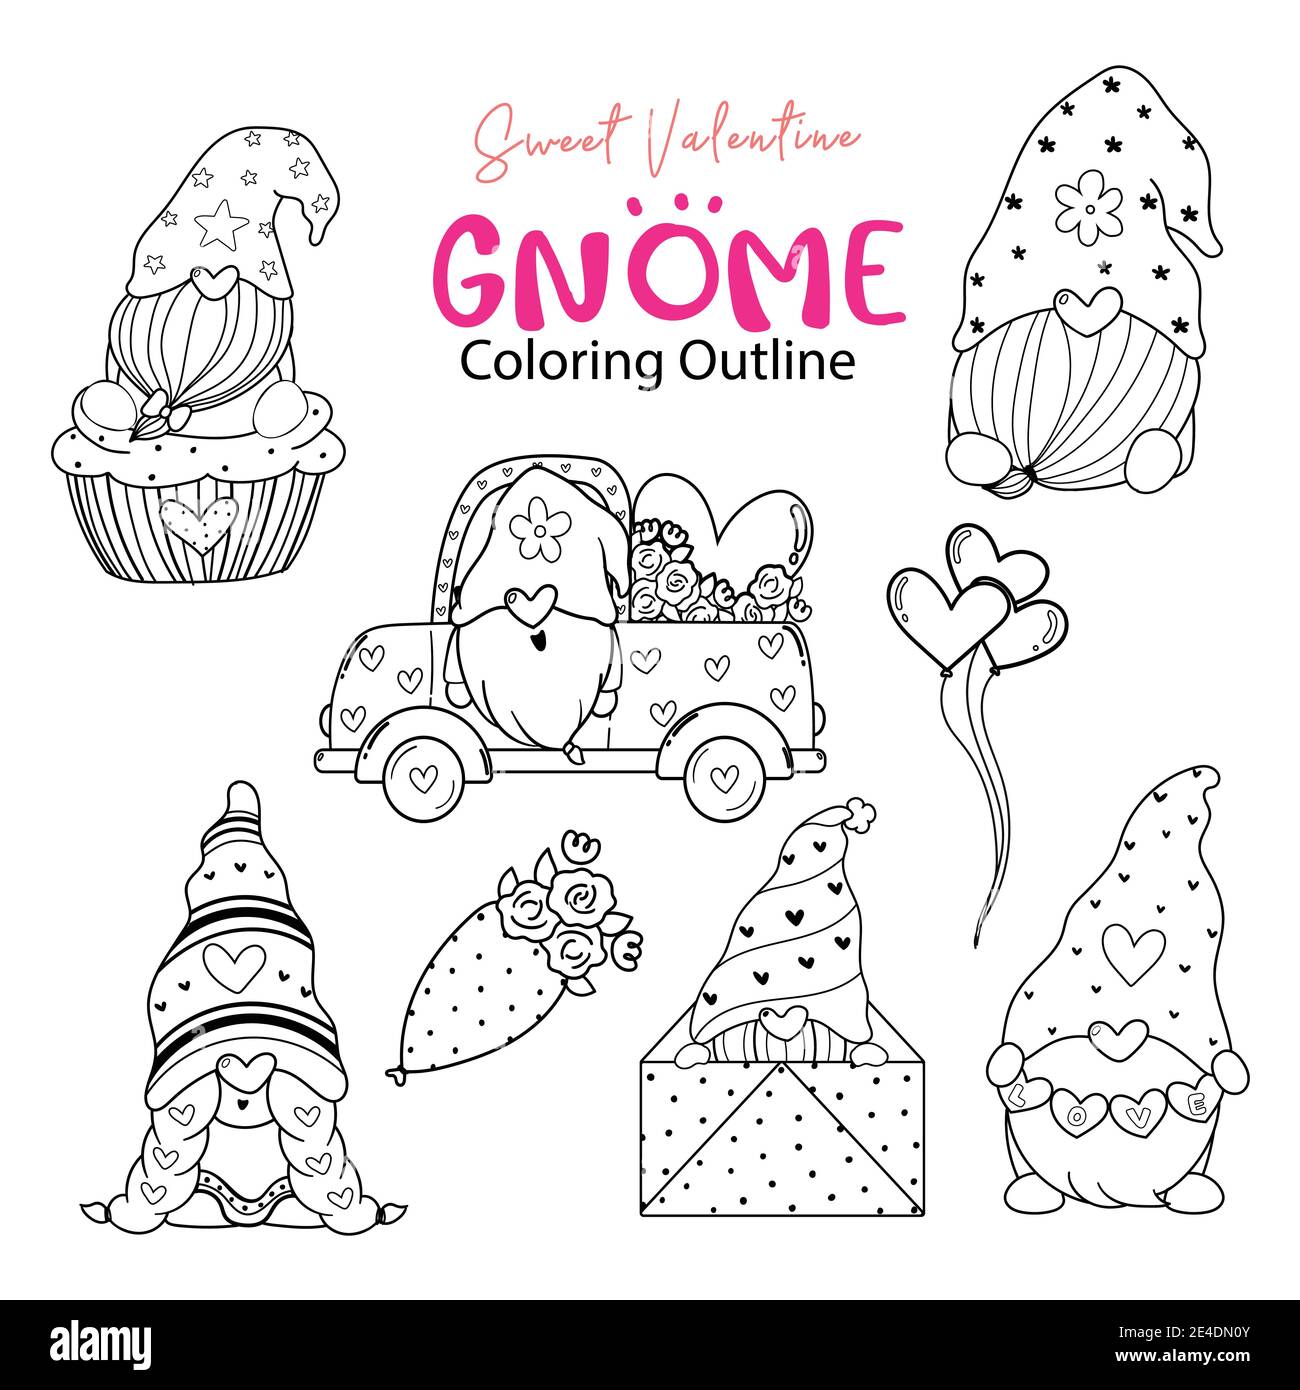 Adorable collection de coloriage de Gnome de Saint-Valentin, ensemble de timbres numériques de Saint-Valentin, ensemble de dessin de nain de dessin de dessin de dessins animés de Gnome Illustration de Vecteur